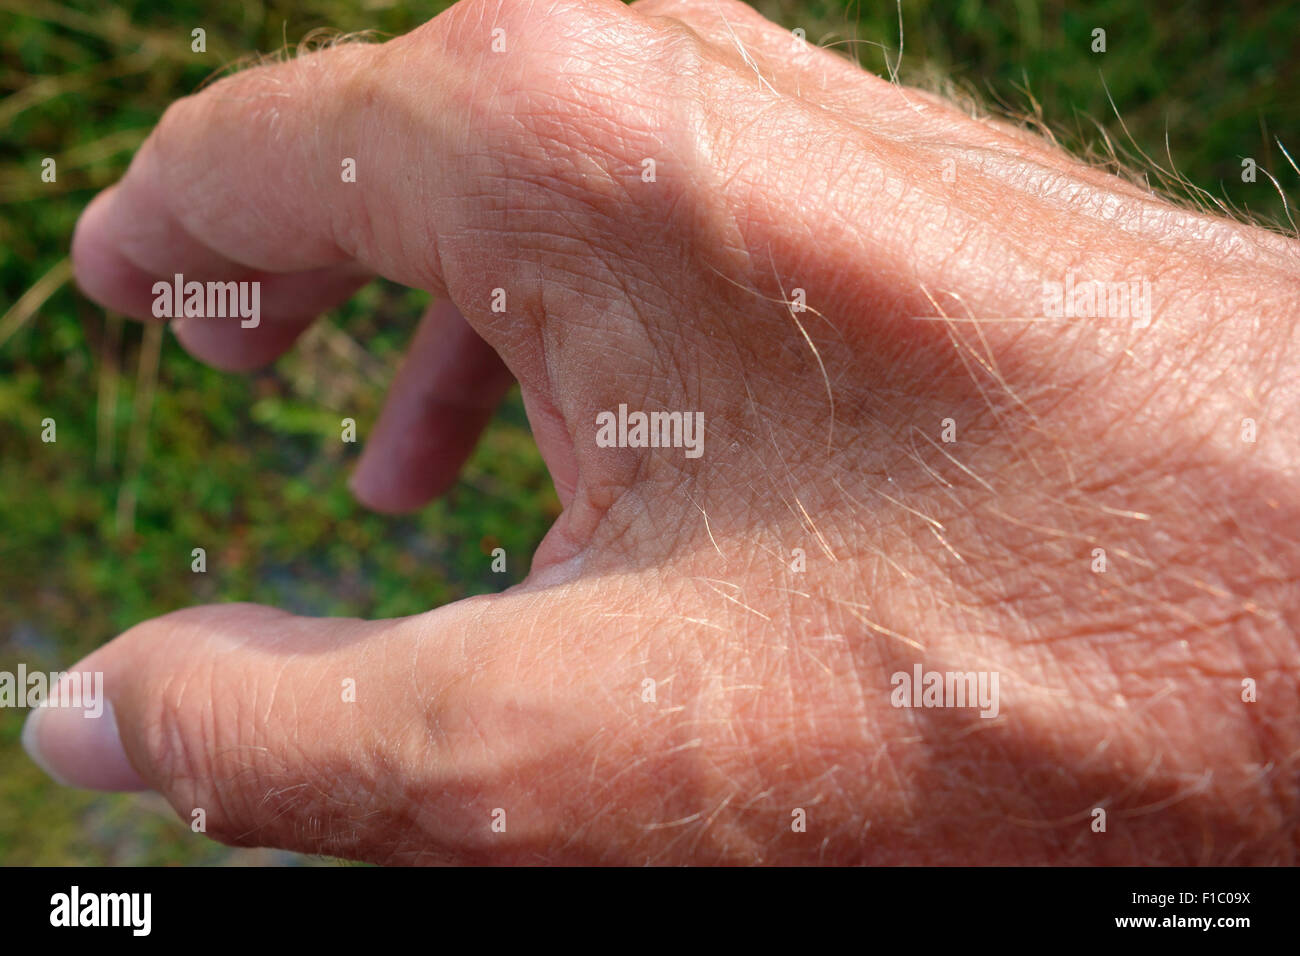 Muscolare e atrofia tra il pollice e il dito indice della mano a causa di neuropatia ulnare essendo questo un sintomo principale Foto Stock